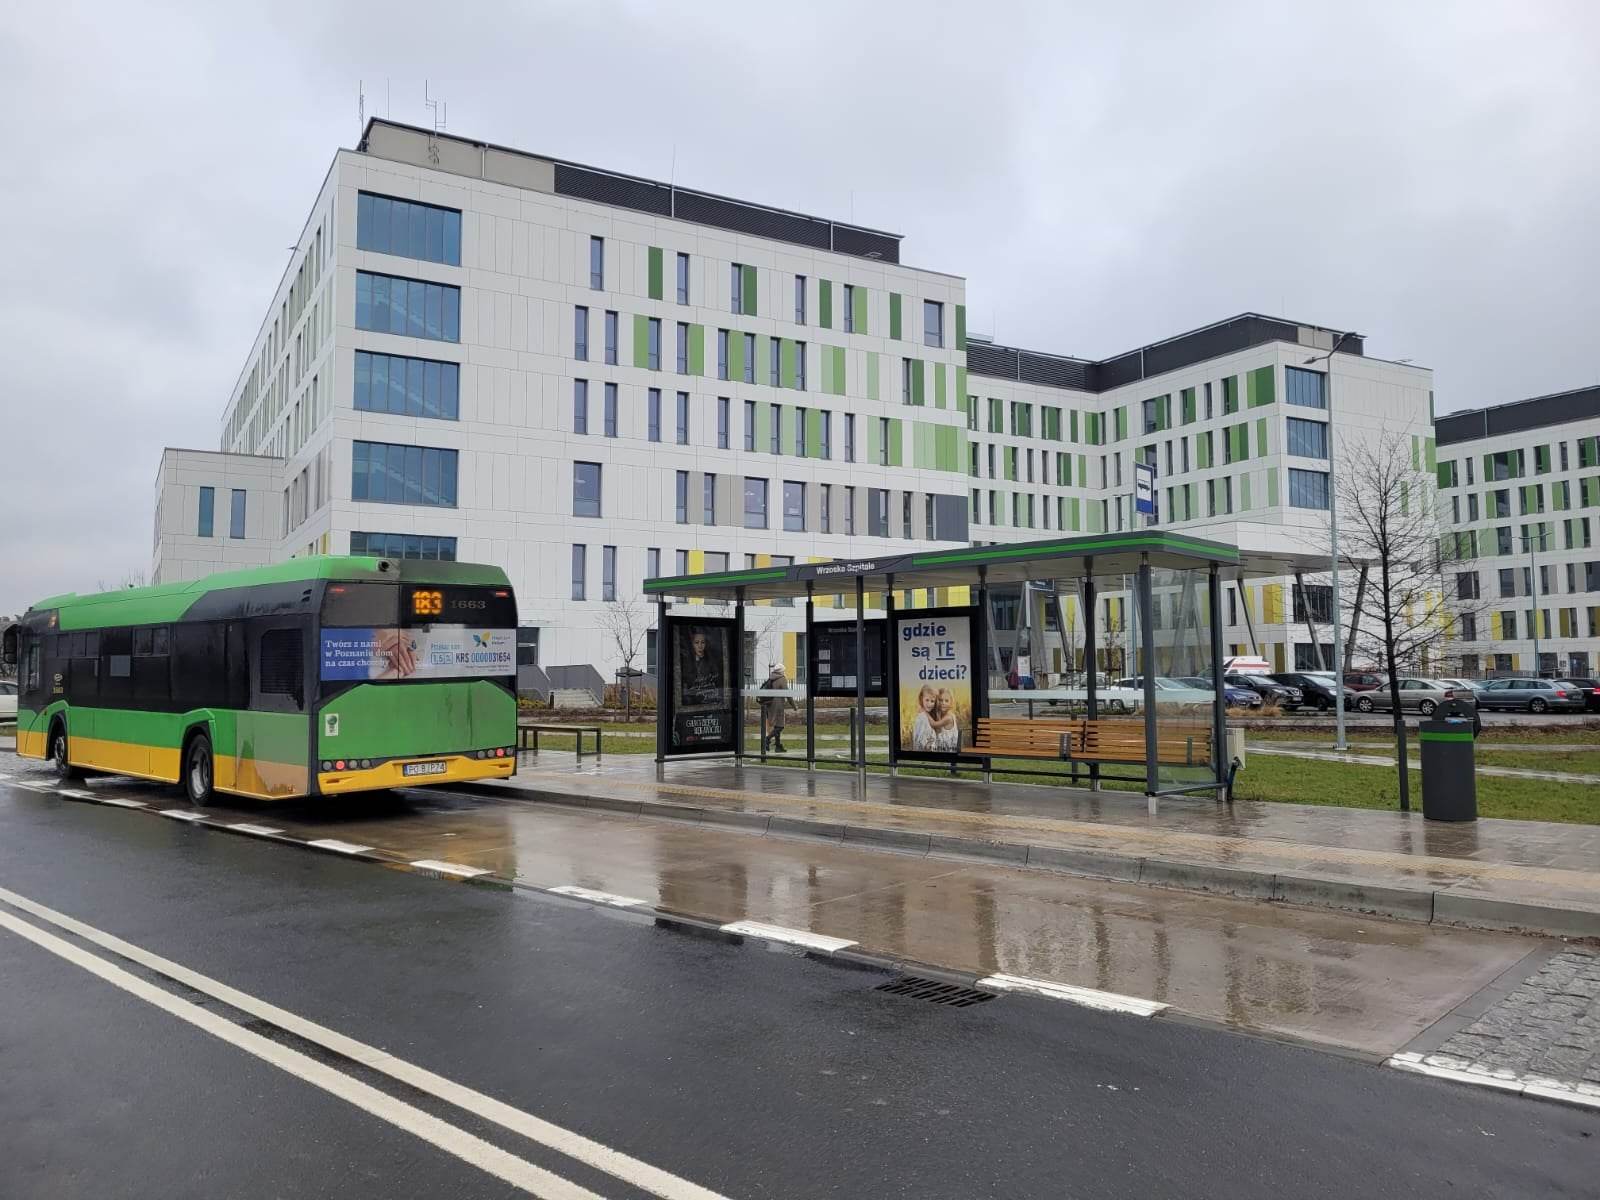 Od 13 lutego pasażerowie chcący dojechać do szpitala dziecięcego na ul. Wrzoska będą mogli skorzystać z drugiej  linii autobusowej – nr 170 